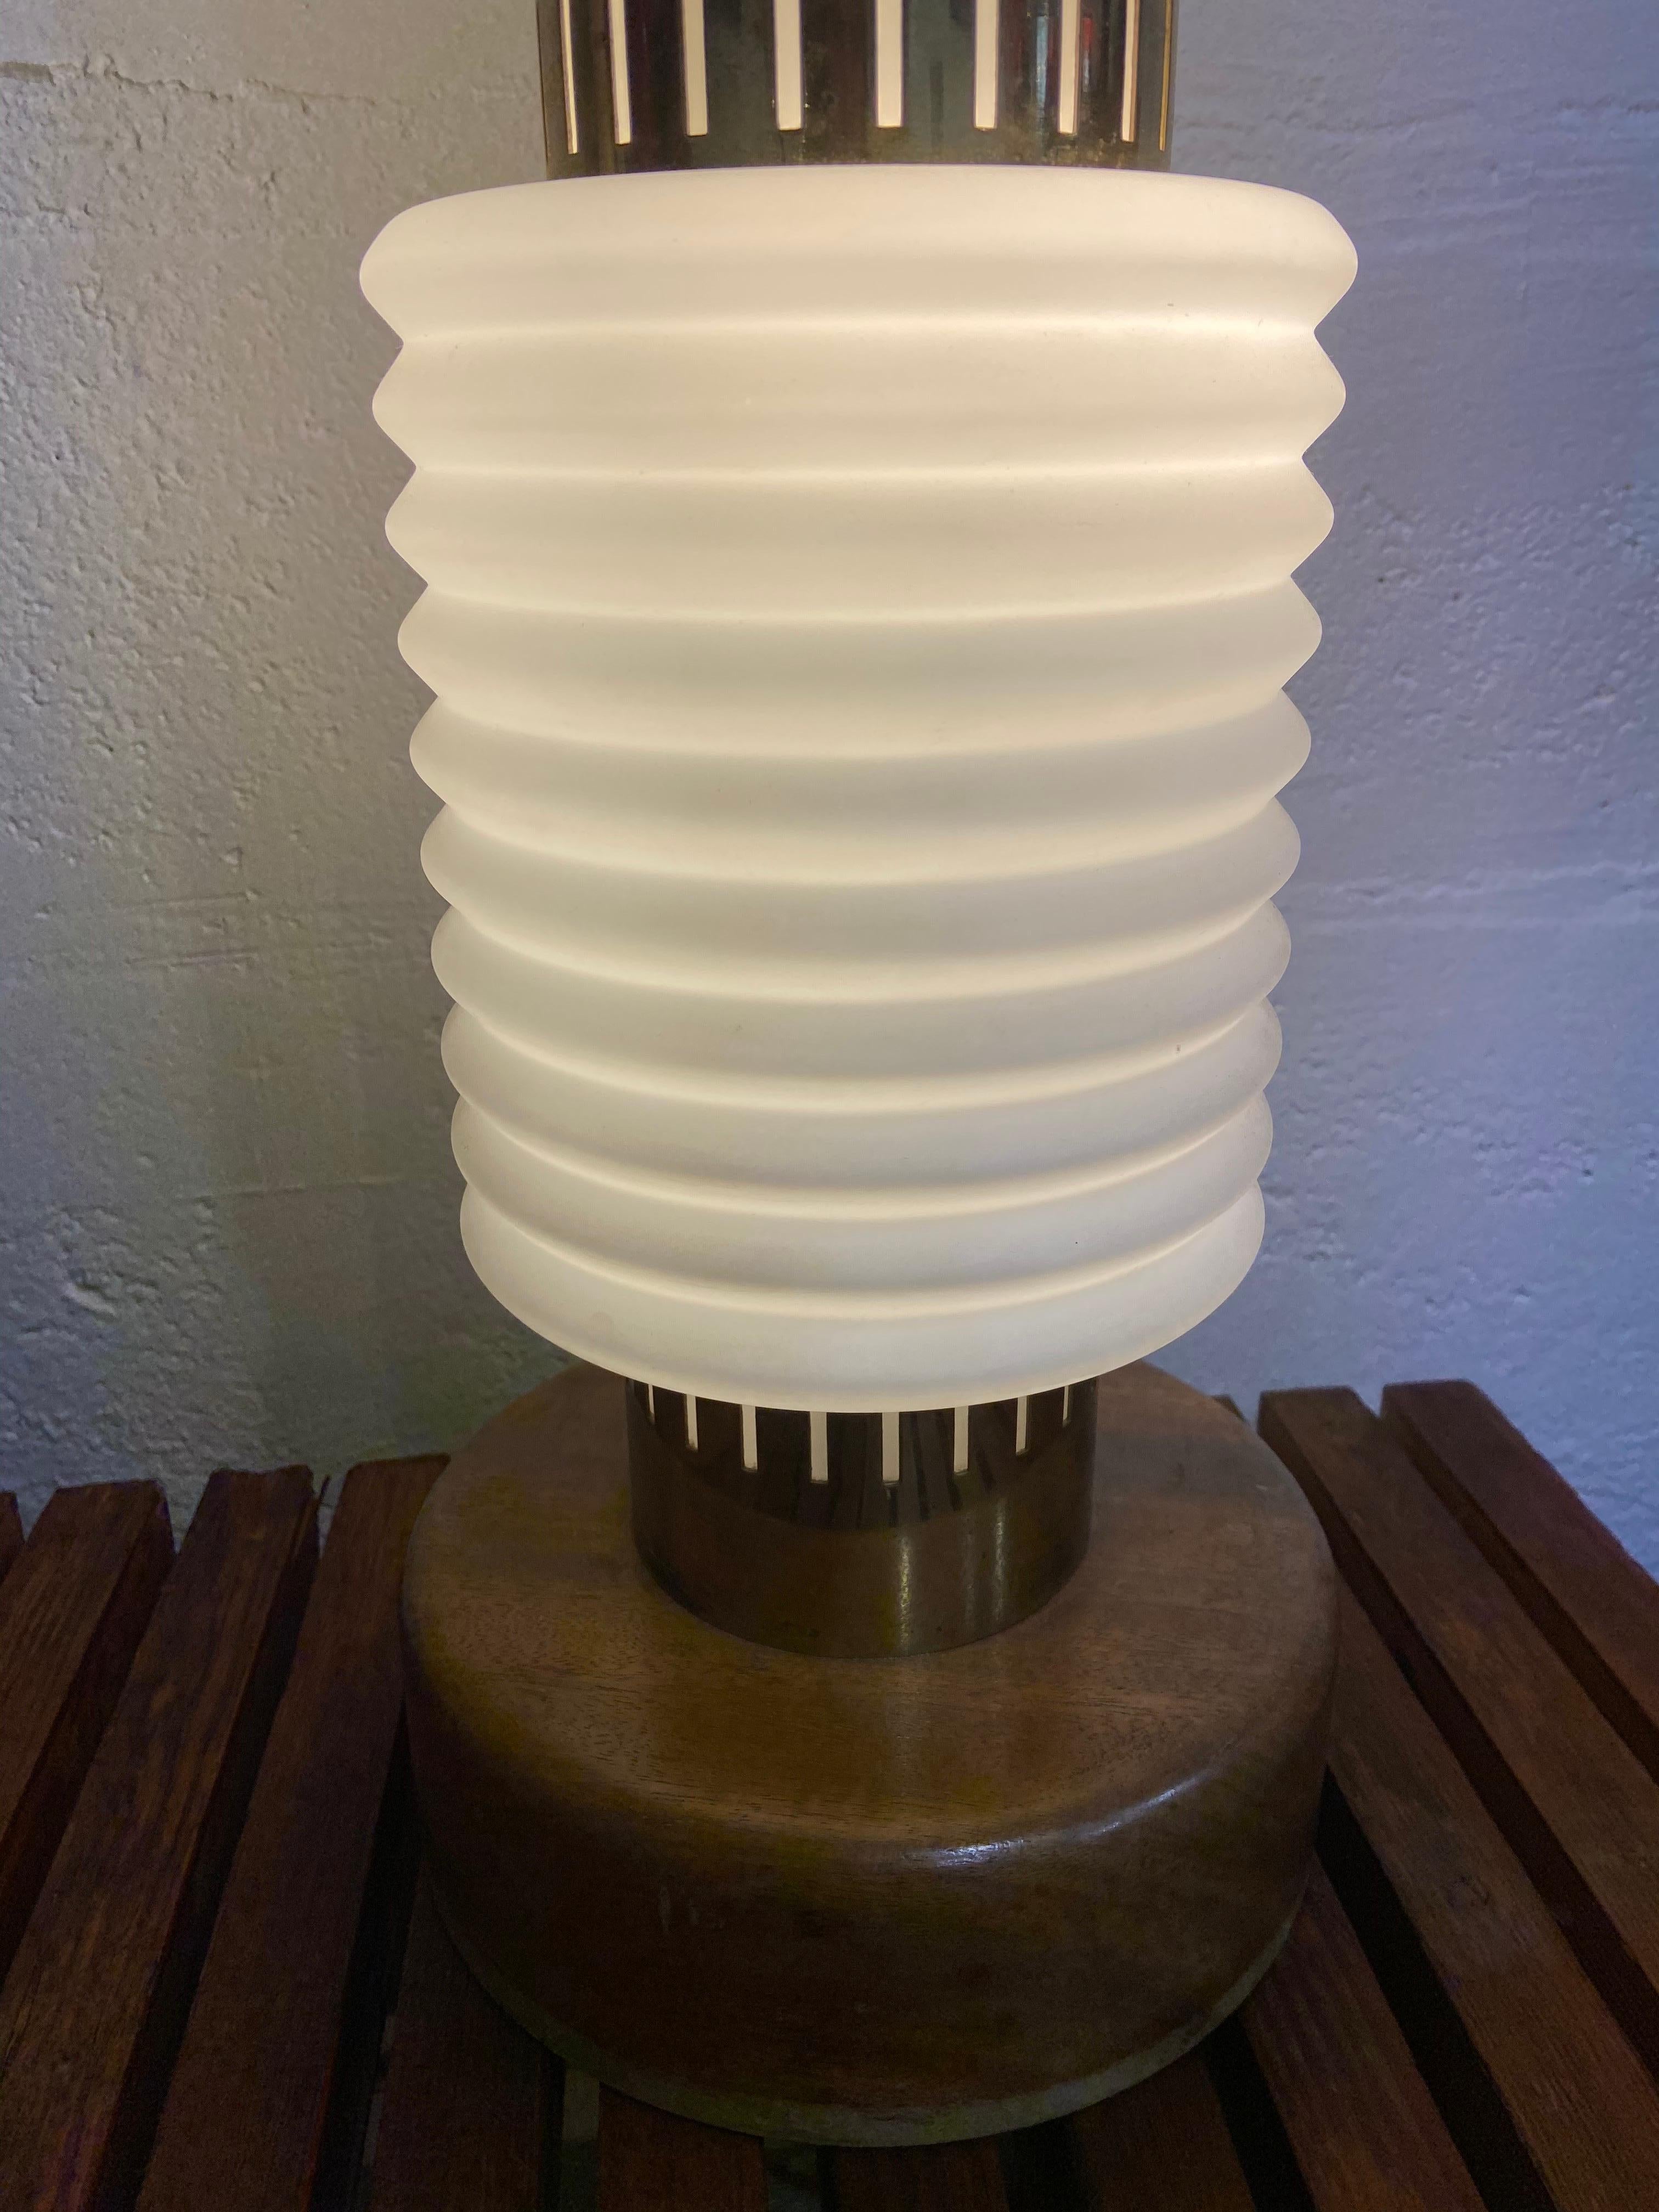 Lampe design scandinave opaline,
palissandre et laiton,
circa 1960
Size: H 92 x D 18
1800 Euros.